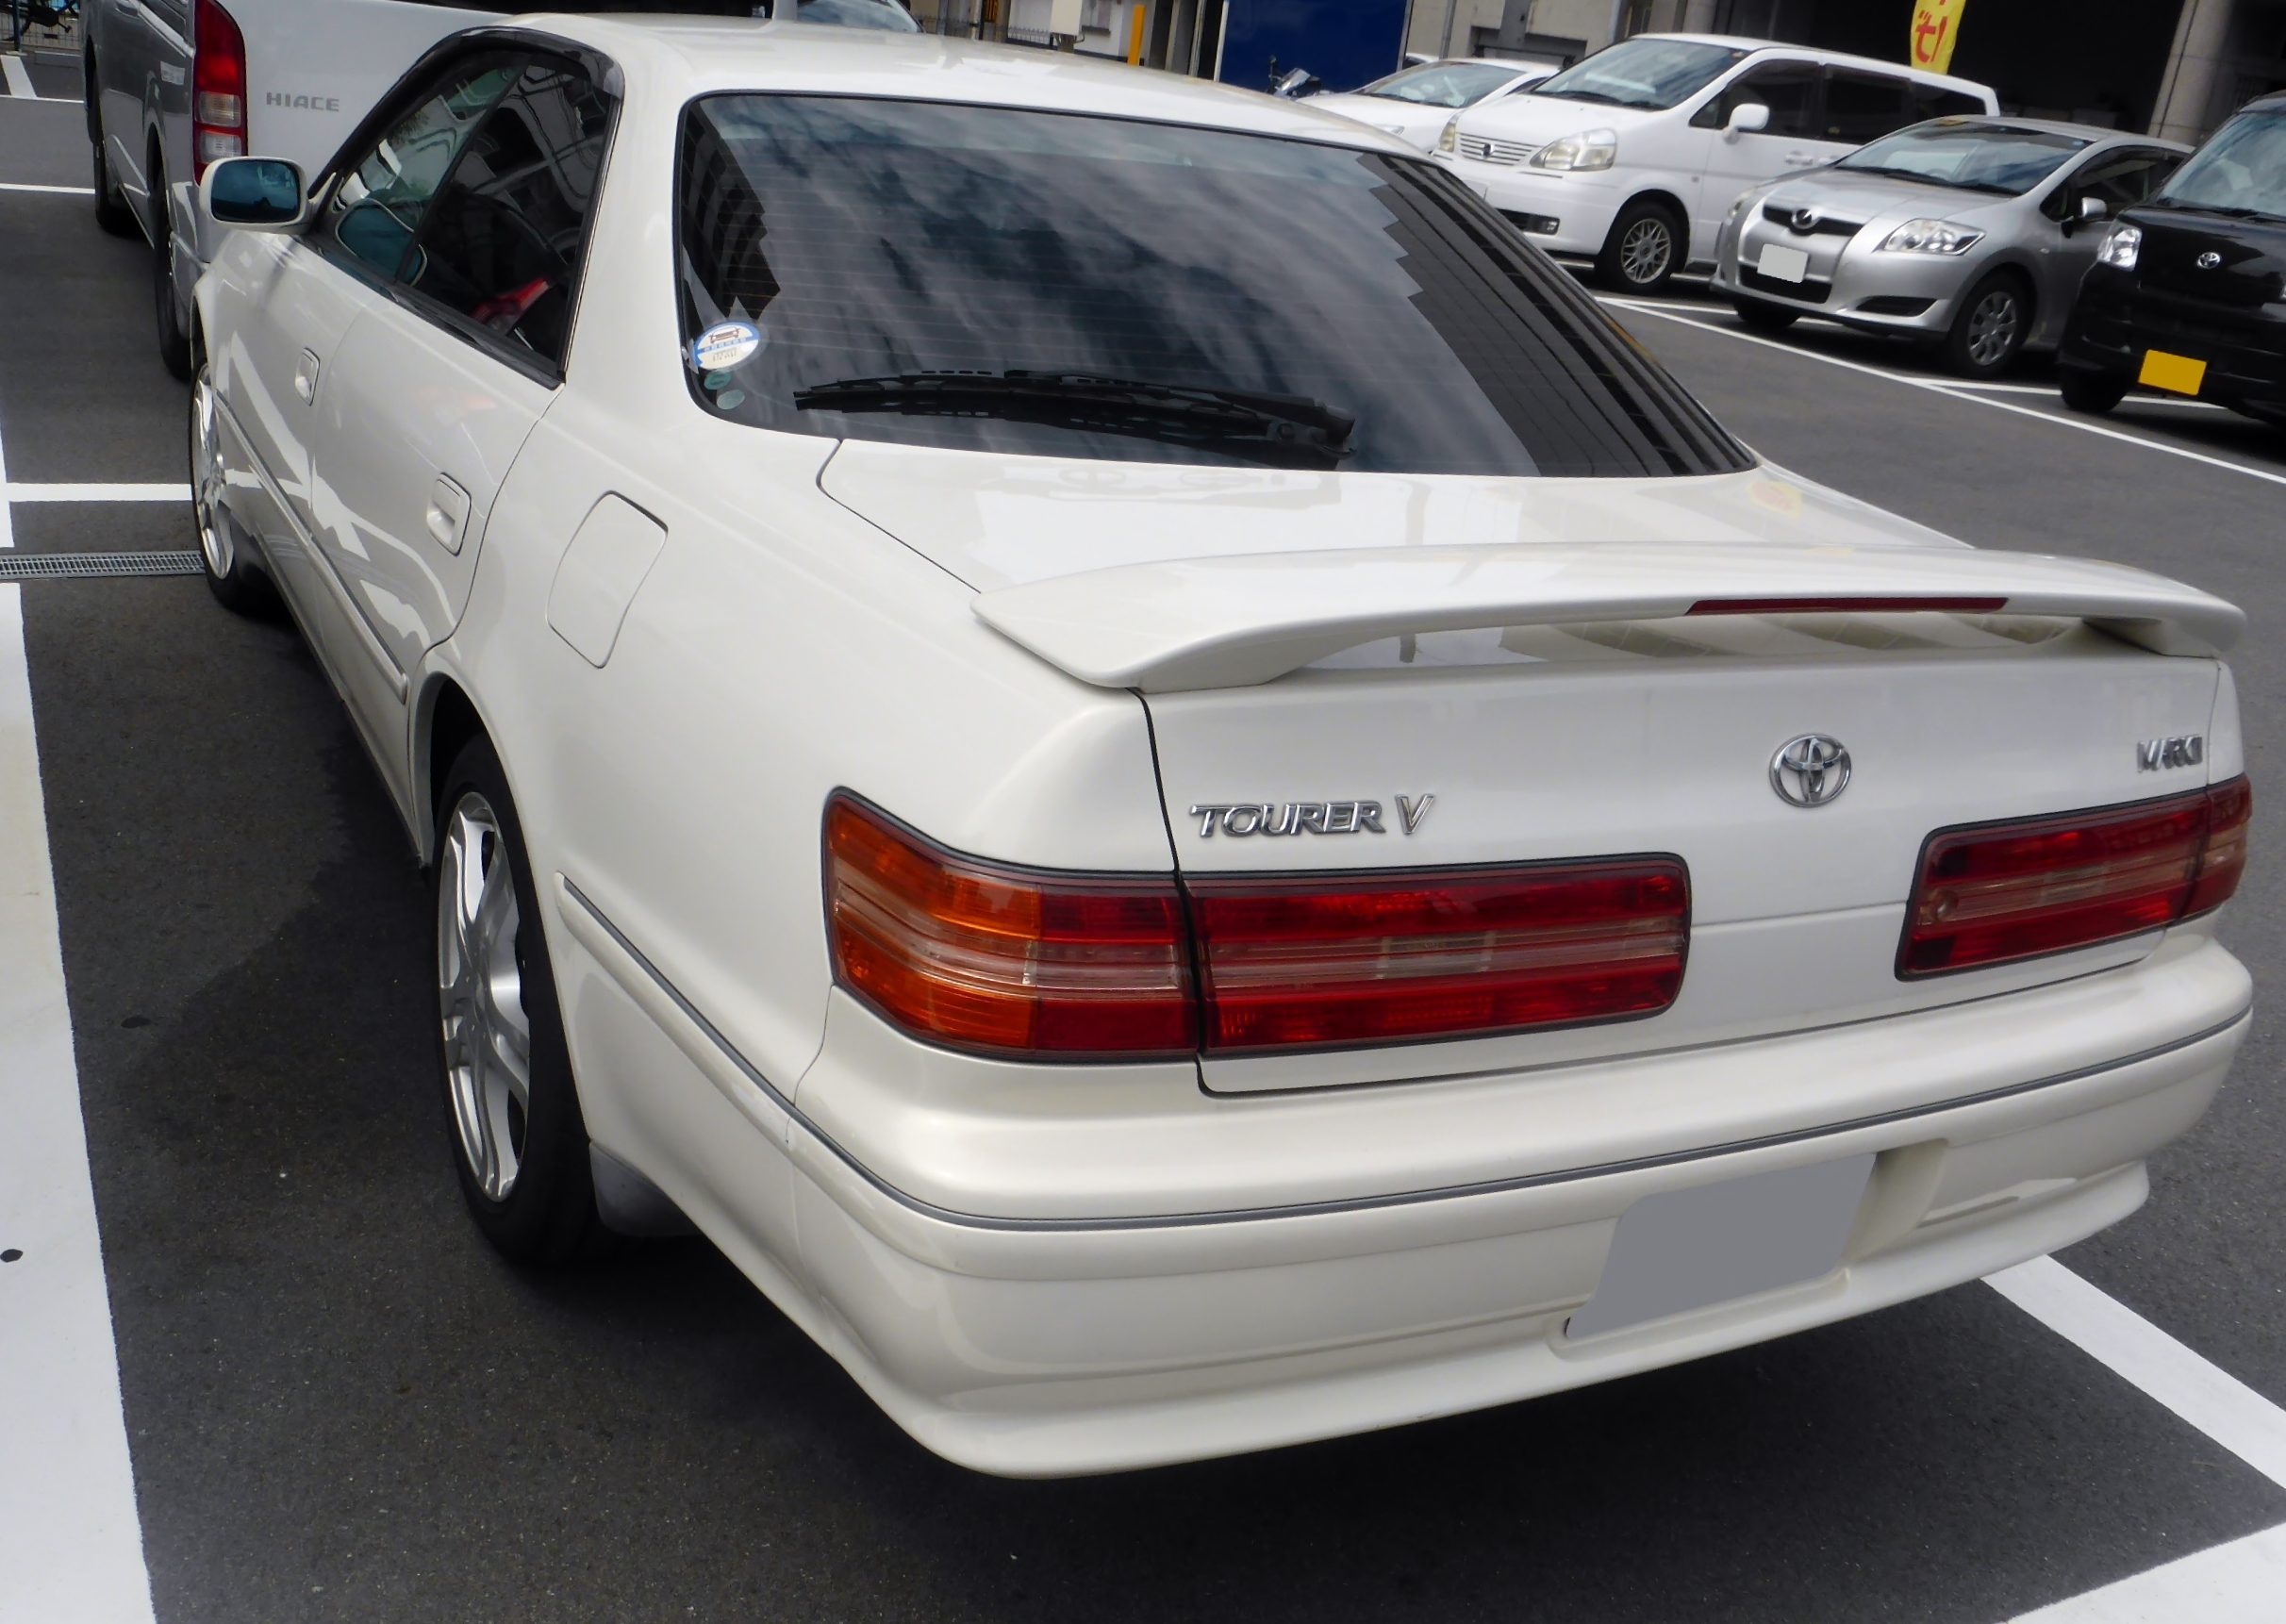 Toyota_MARK_II_TOURER_V_(X100)_rear.JPG